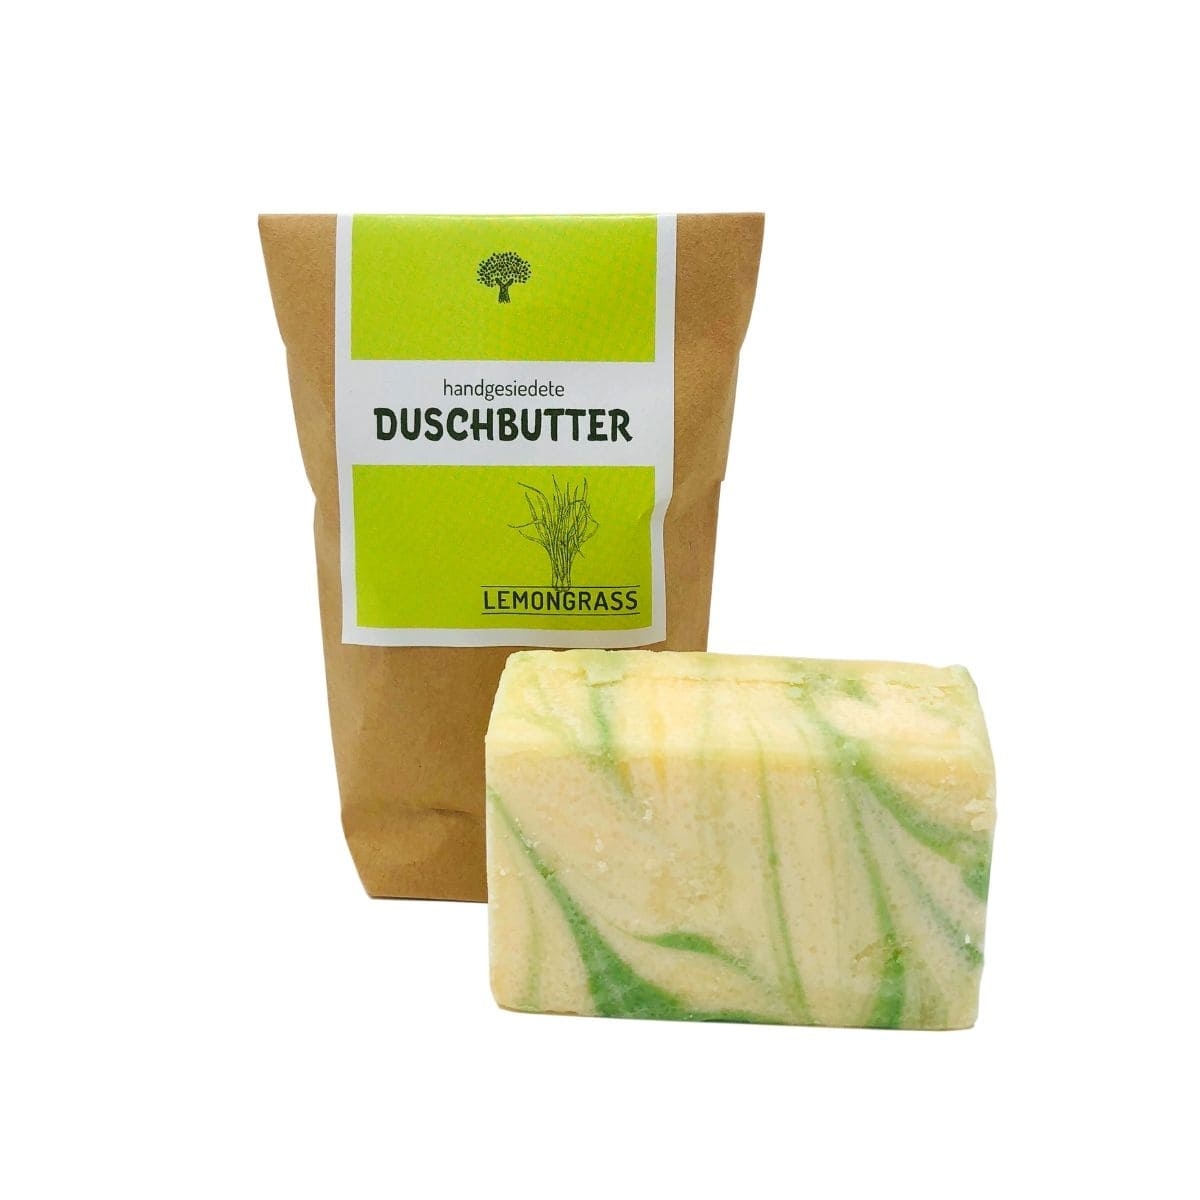 Duschbutter - Lemongrass